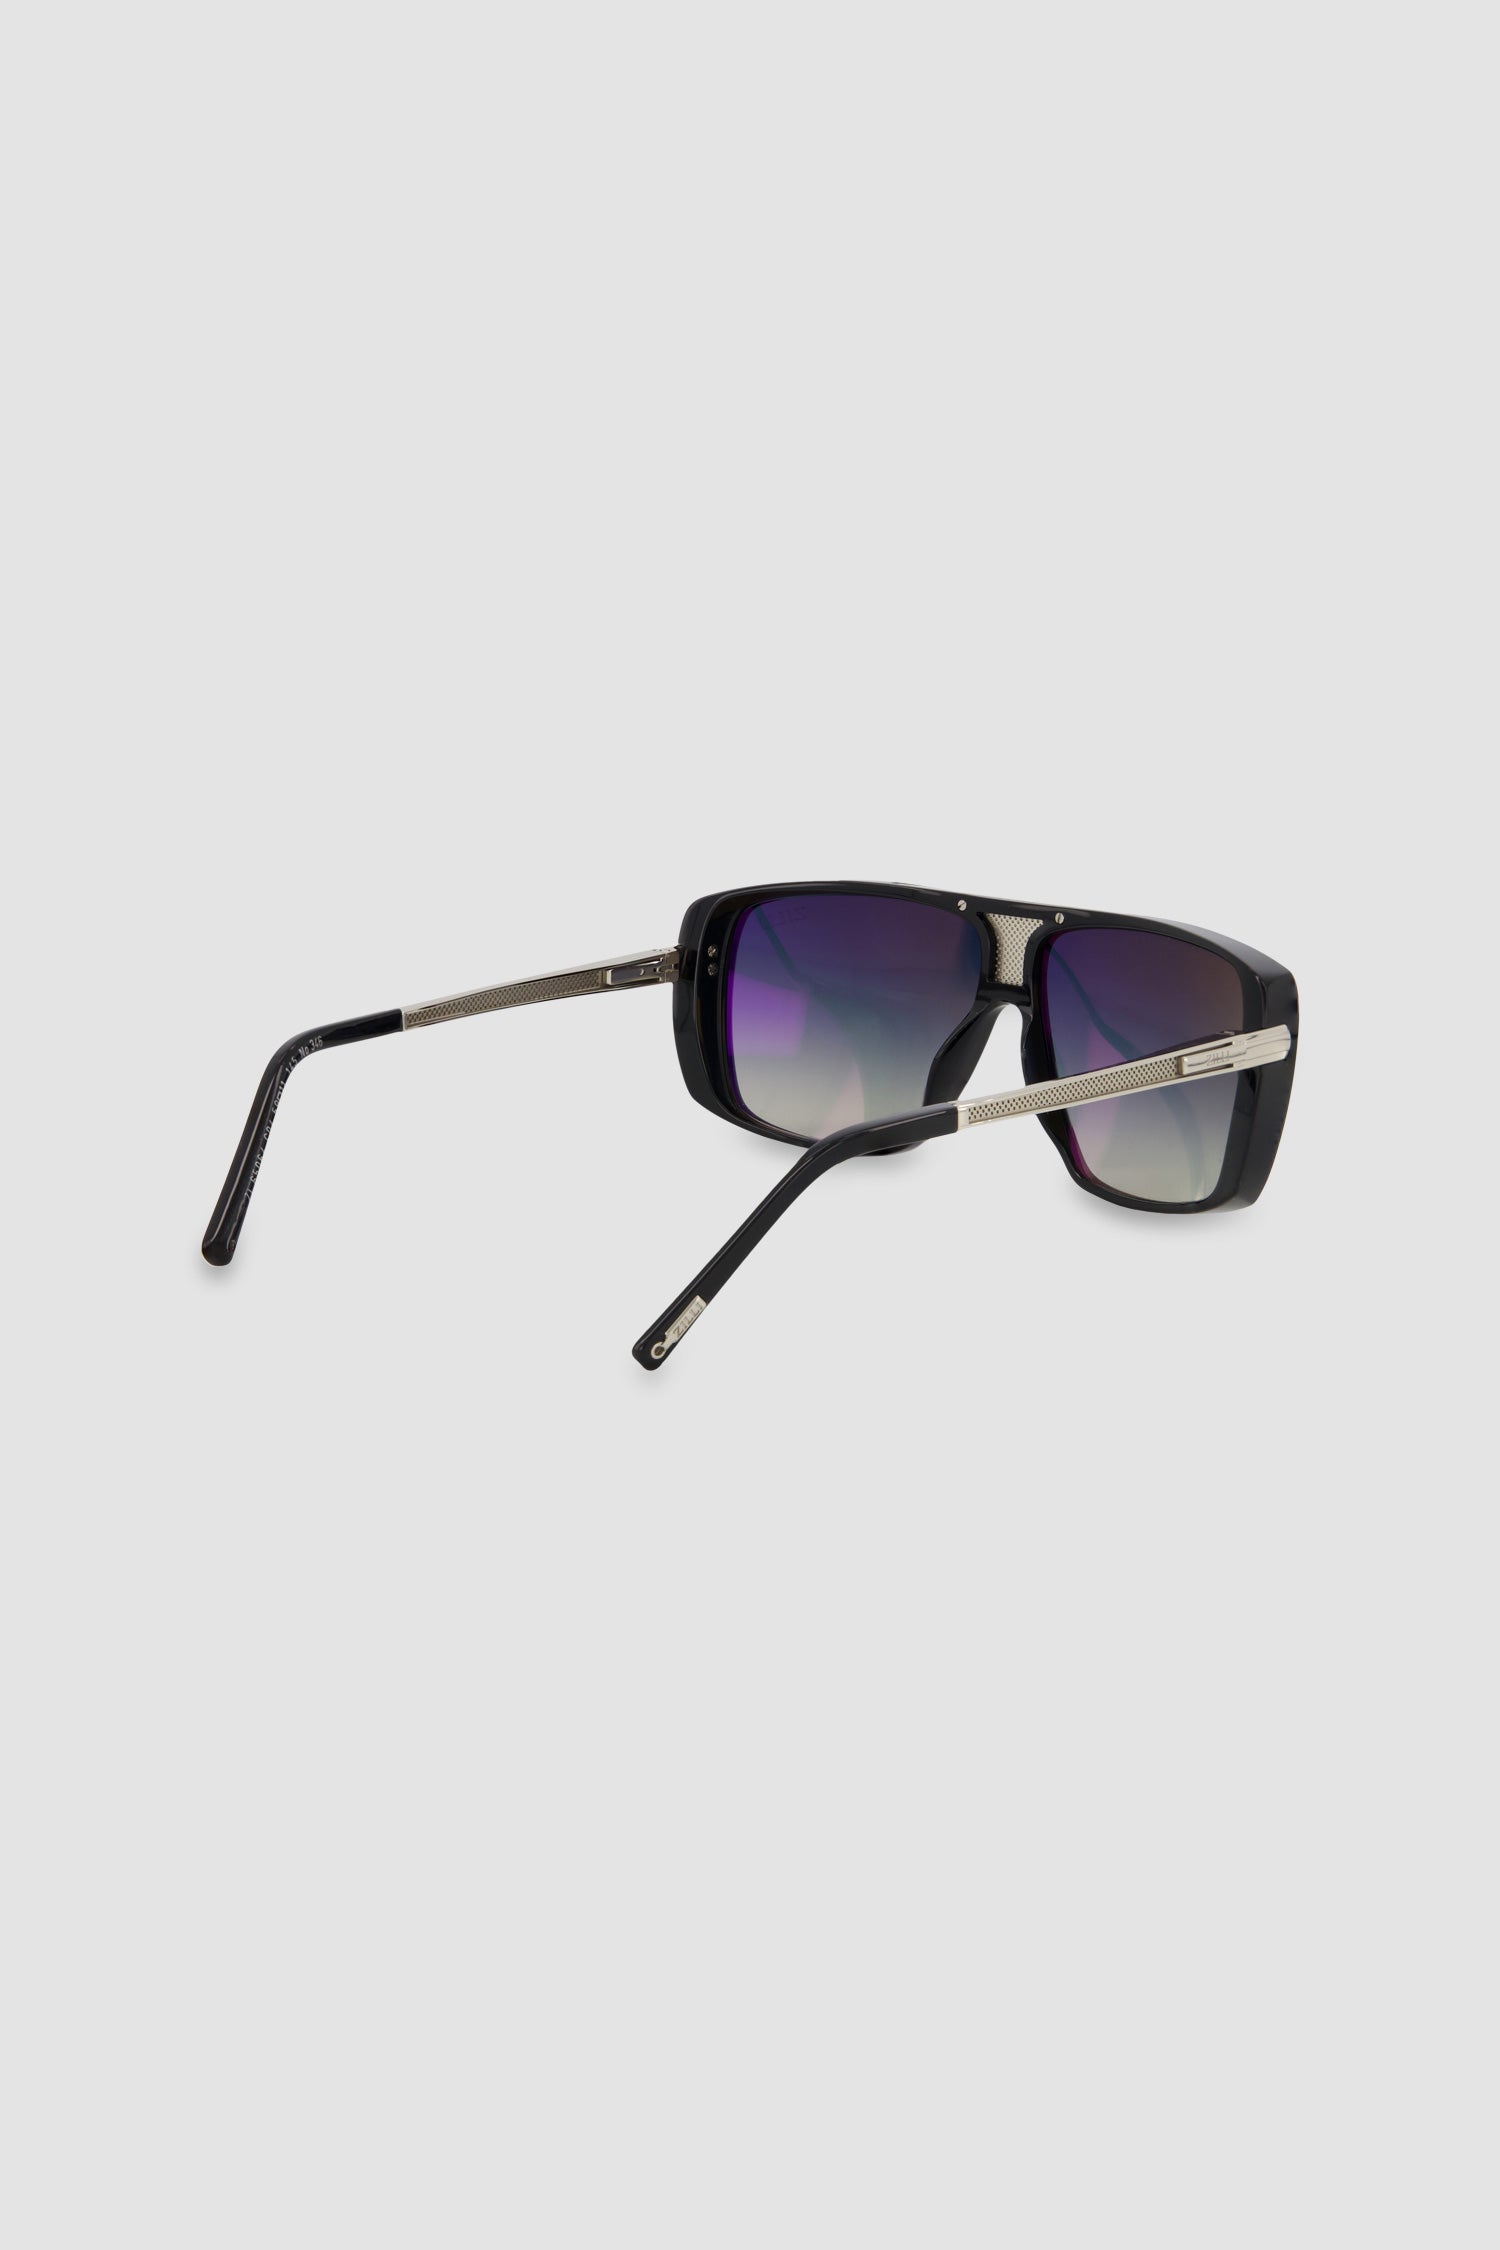 Zilli Black Andrei Sunglasses